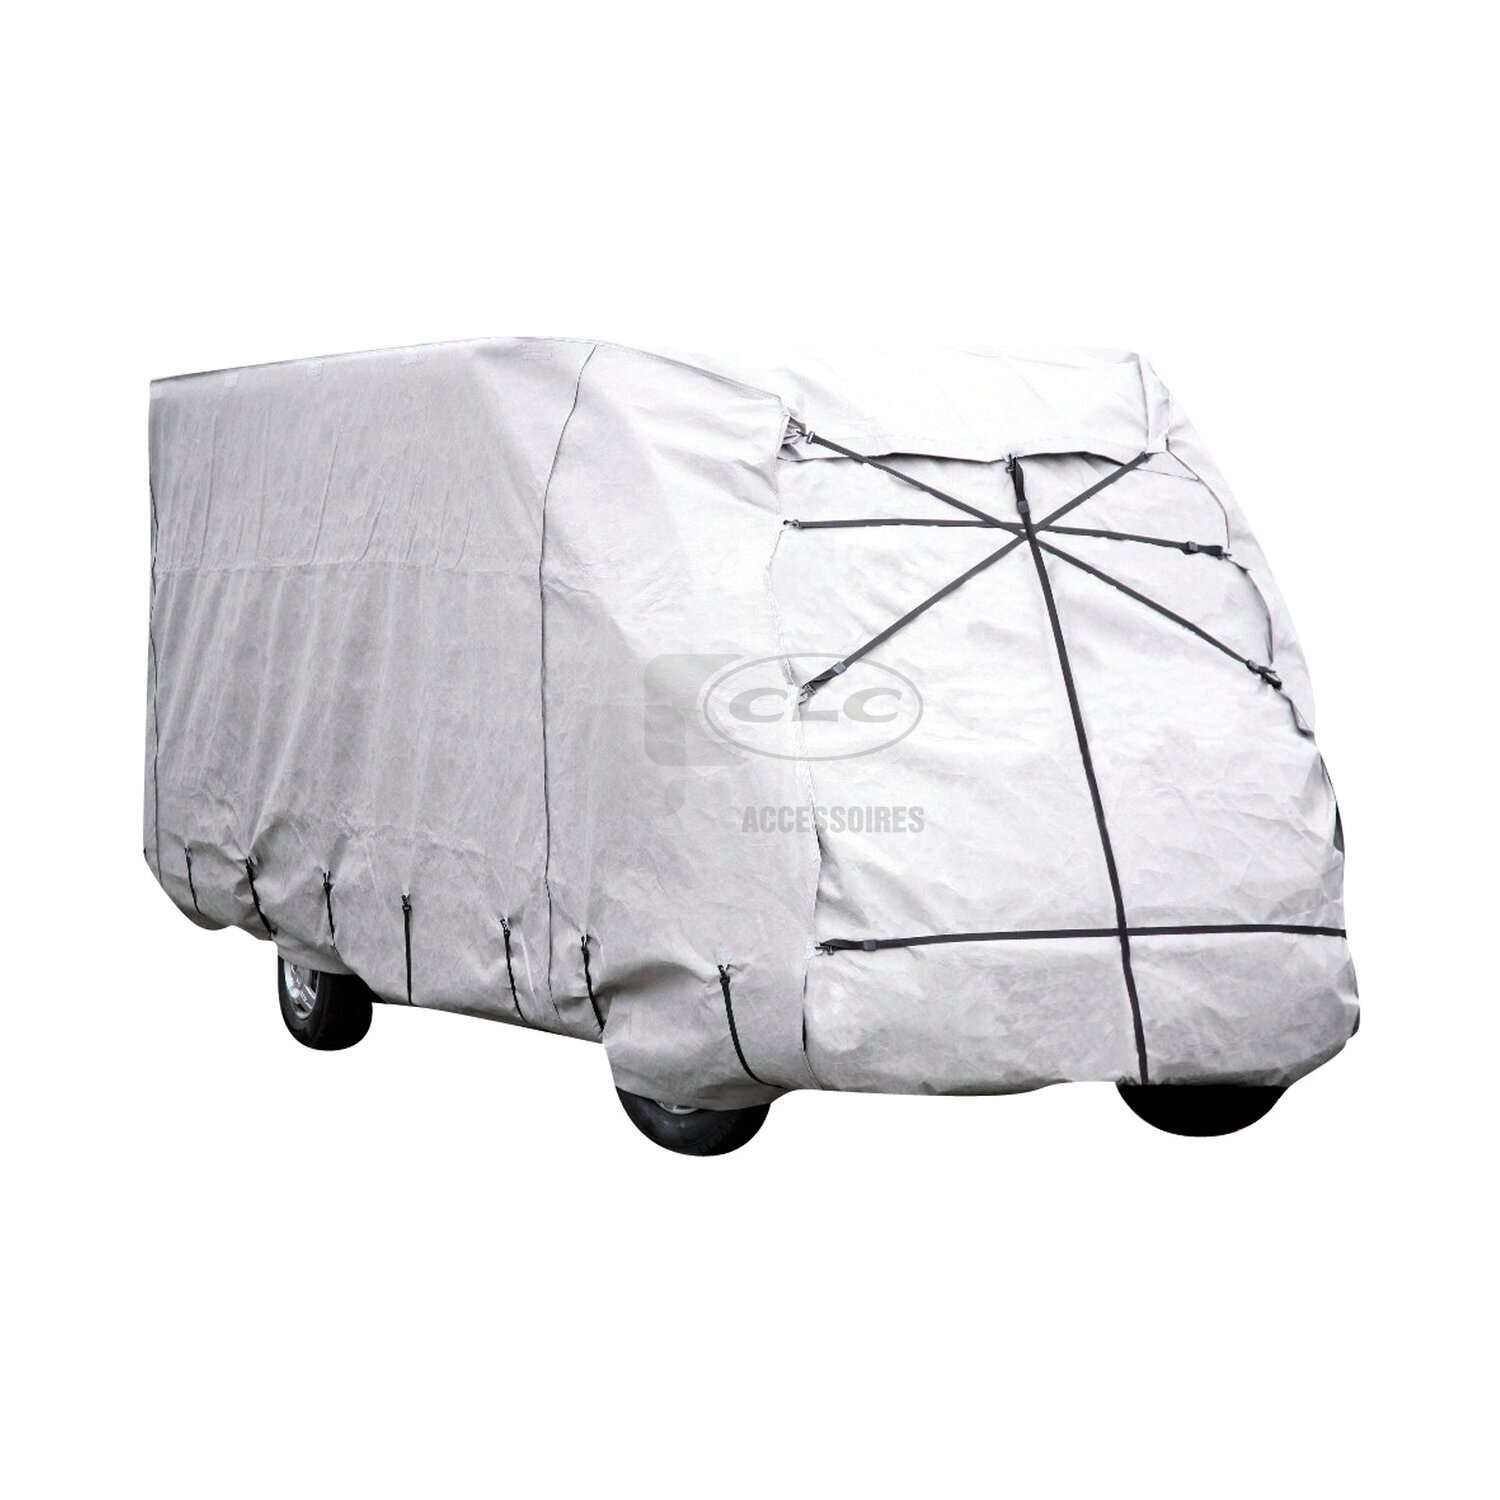 Housse de protection pour camping car